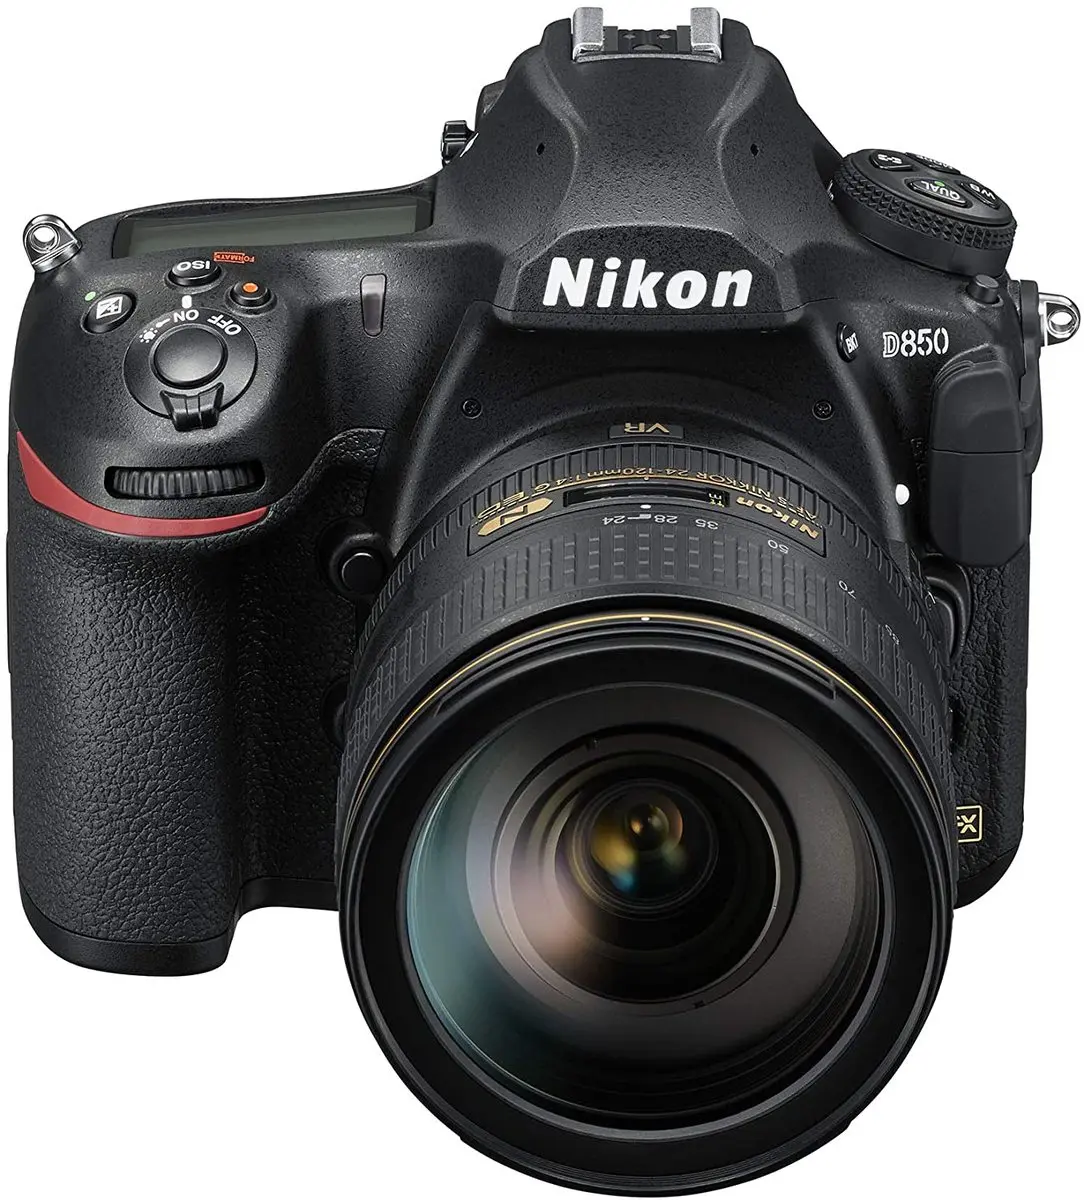 3. Nikon D850 24-120 Kit DSLR 45MP 4K WiFi Digital SLR Camera Body